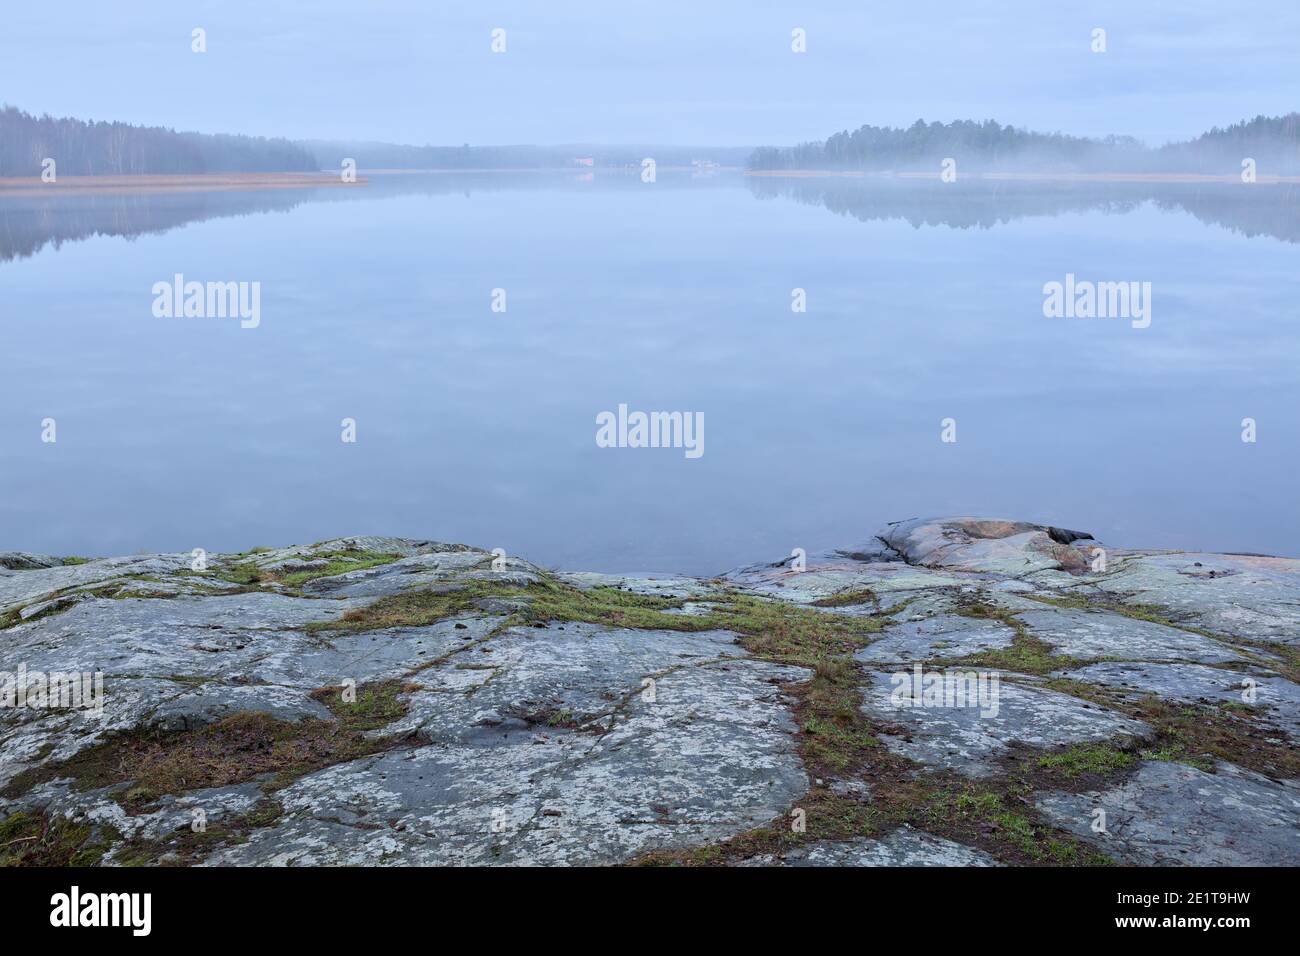 Vista del invierno sobre Skogstaviken desde Råholmen, Bogesundslandet, en las afueras de Vaxholm, Suecia Foto de stock